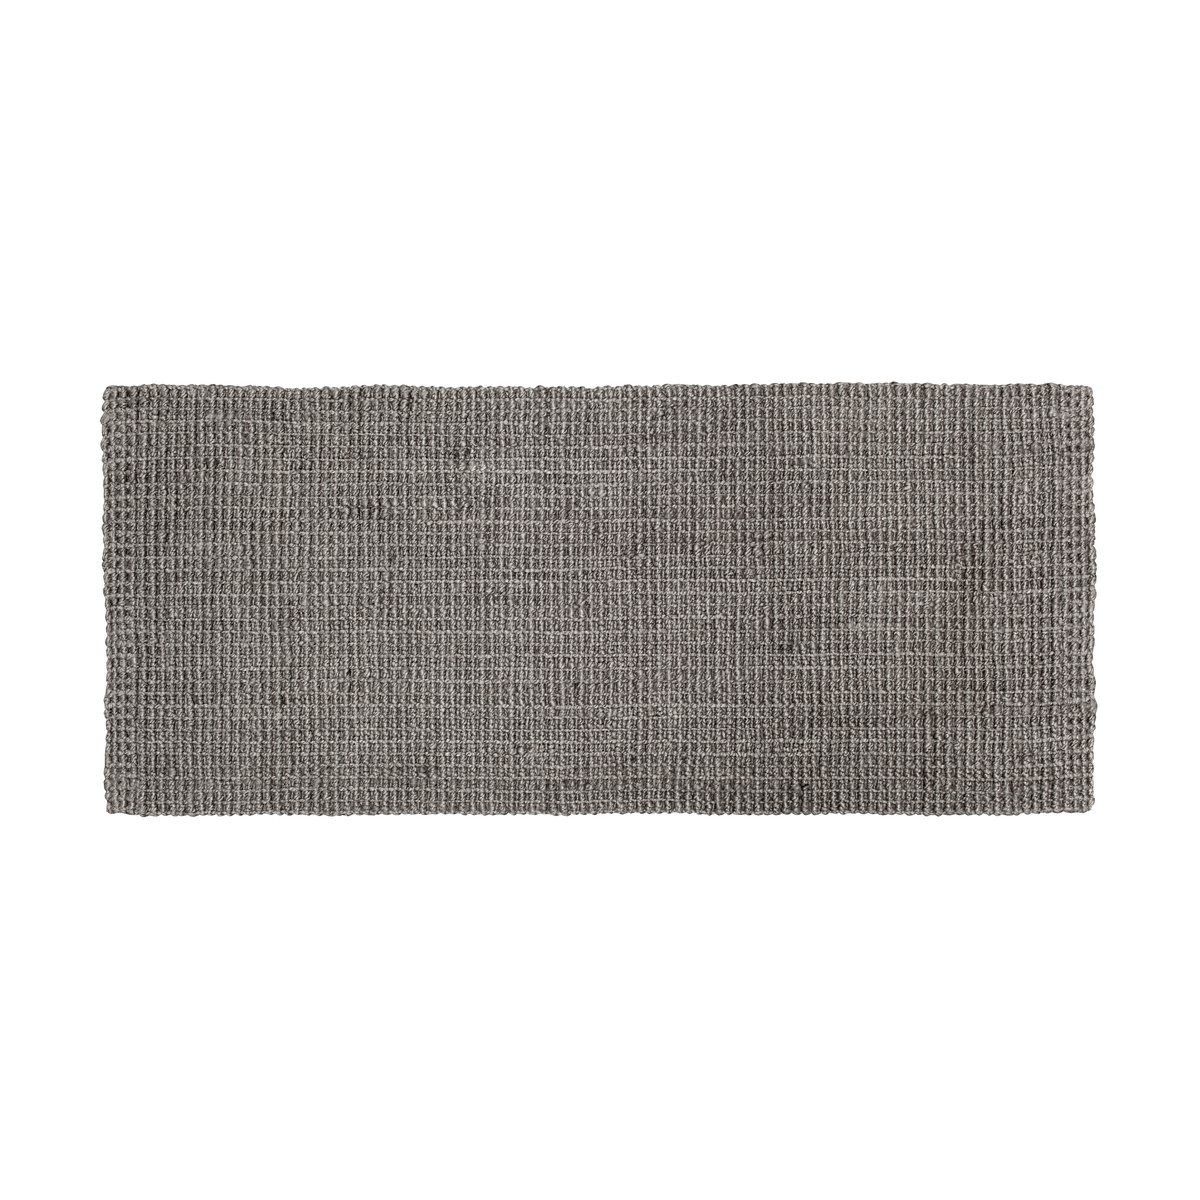 Dixie Julia jute vloerkleed Cement grey, 80x180 cm